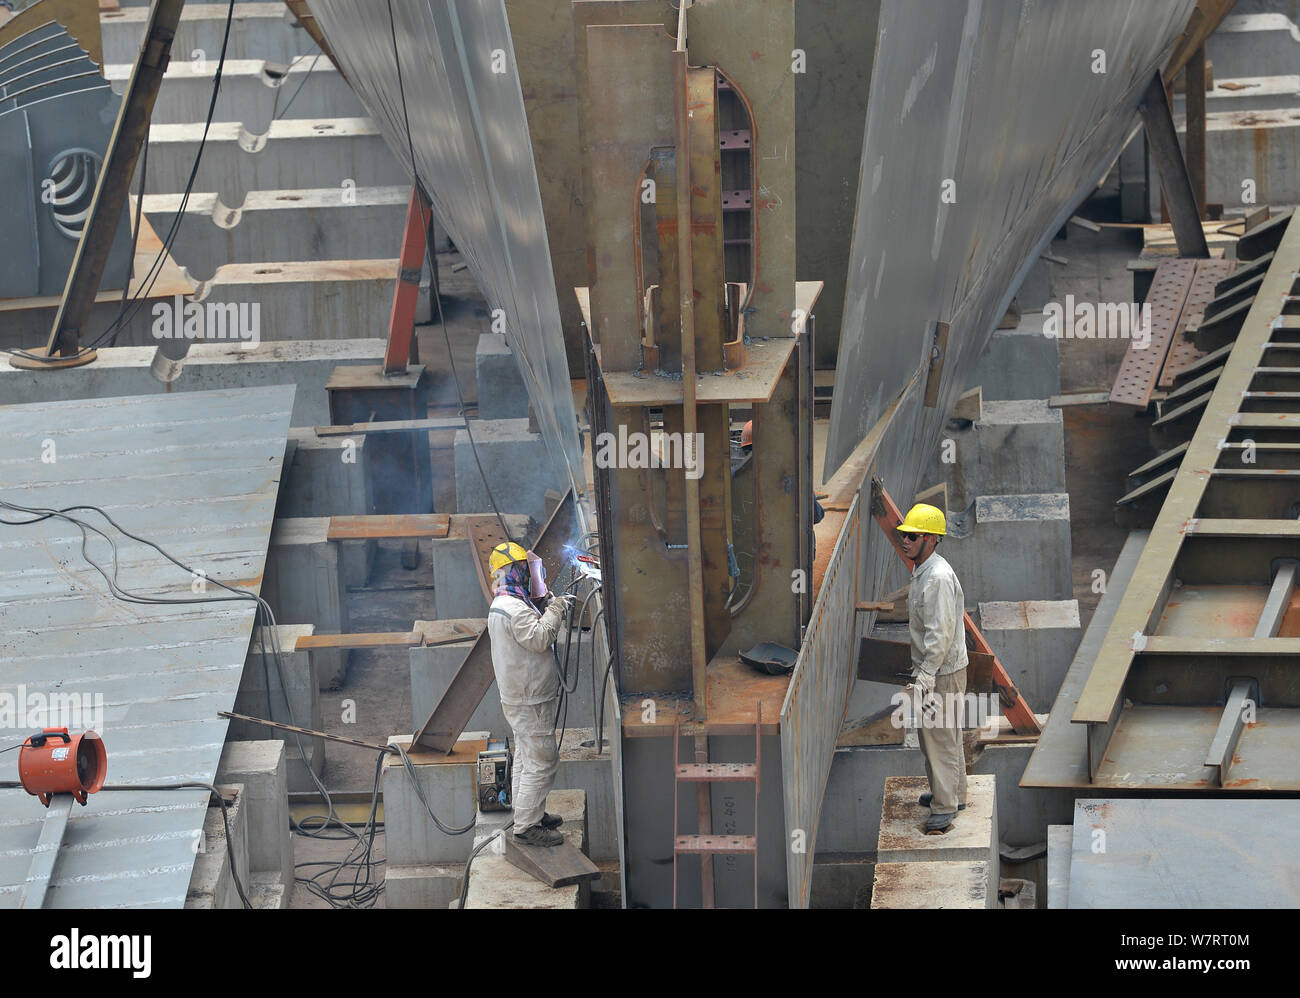 Du travail des travailleurs chinois sur le site de construction d'une réplique grandeur nature du paquebot Titanic dans le comté de Daying, ville de Suining, sud-ouest de la Chine" Banque D'Images